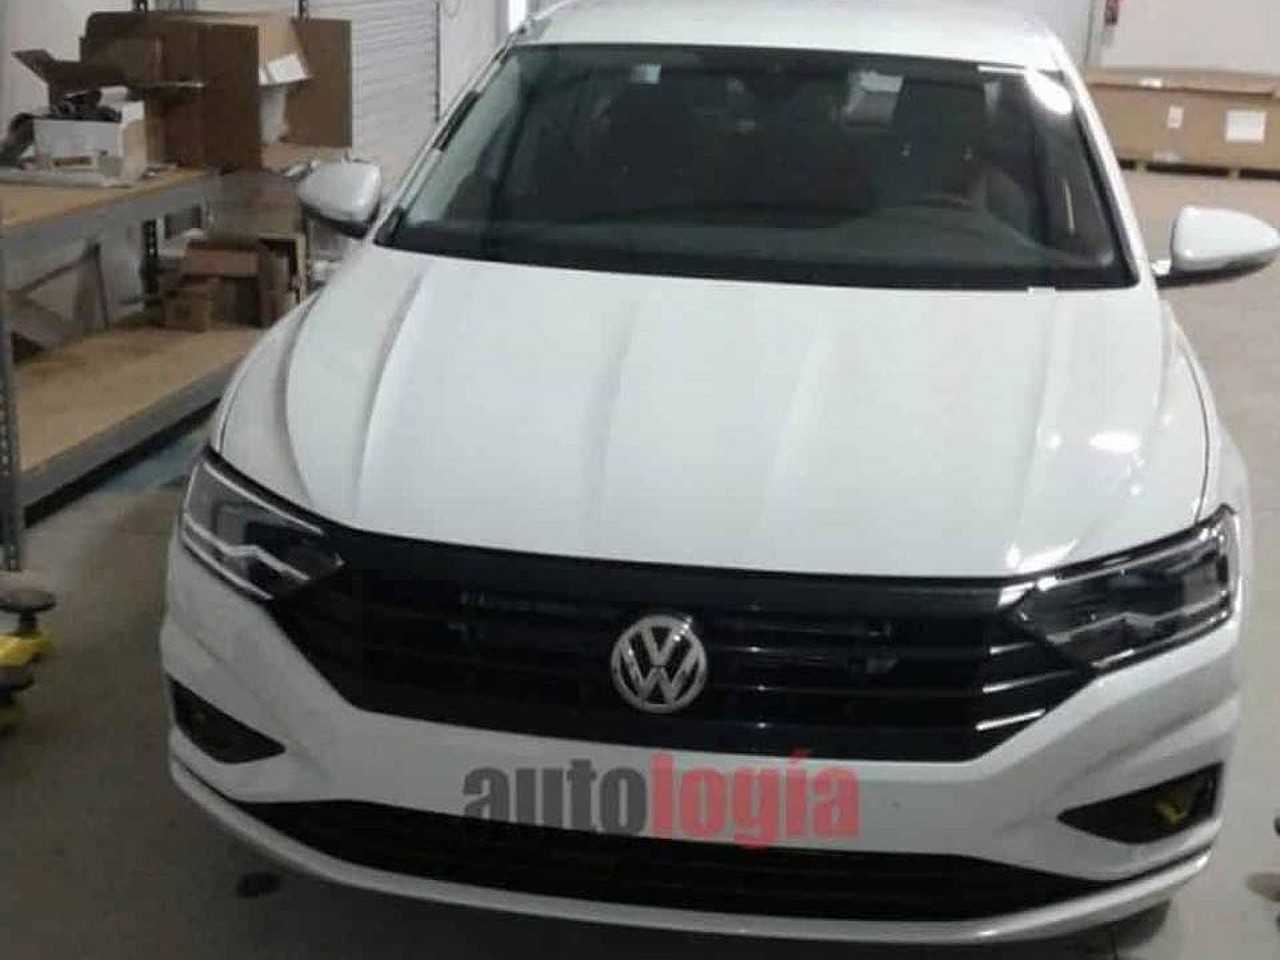 Nova gerao do Volkswagen Jetta tem as primeiras imagens sem disfarce reveladas